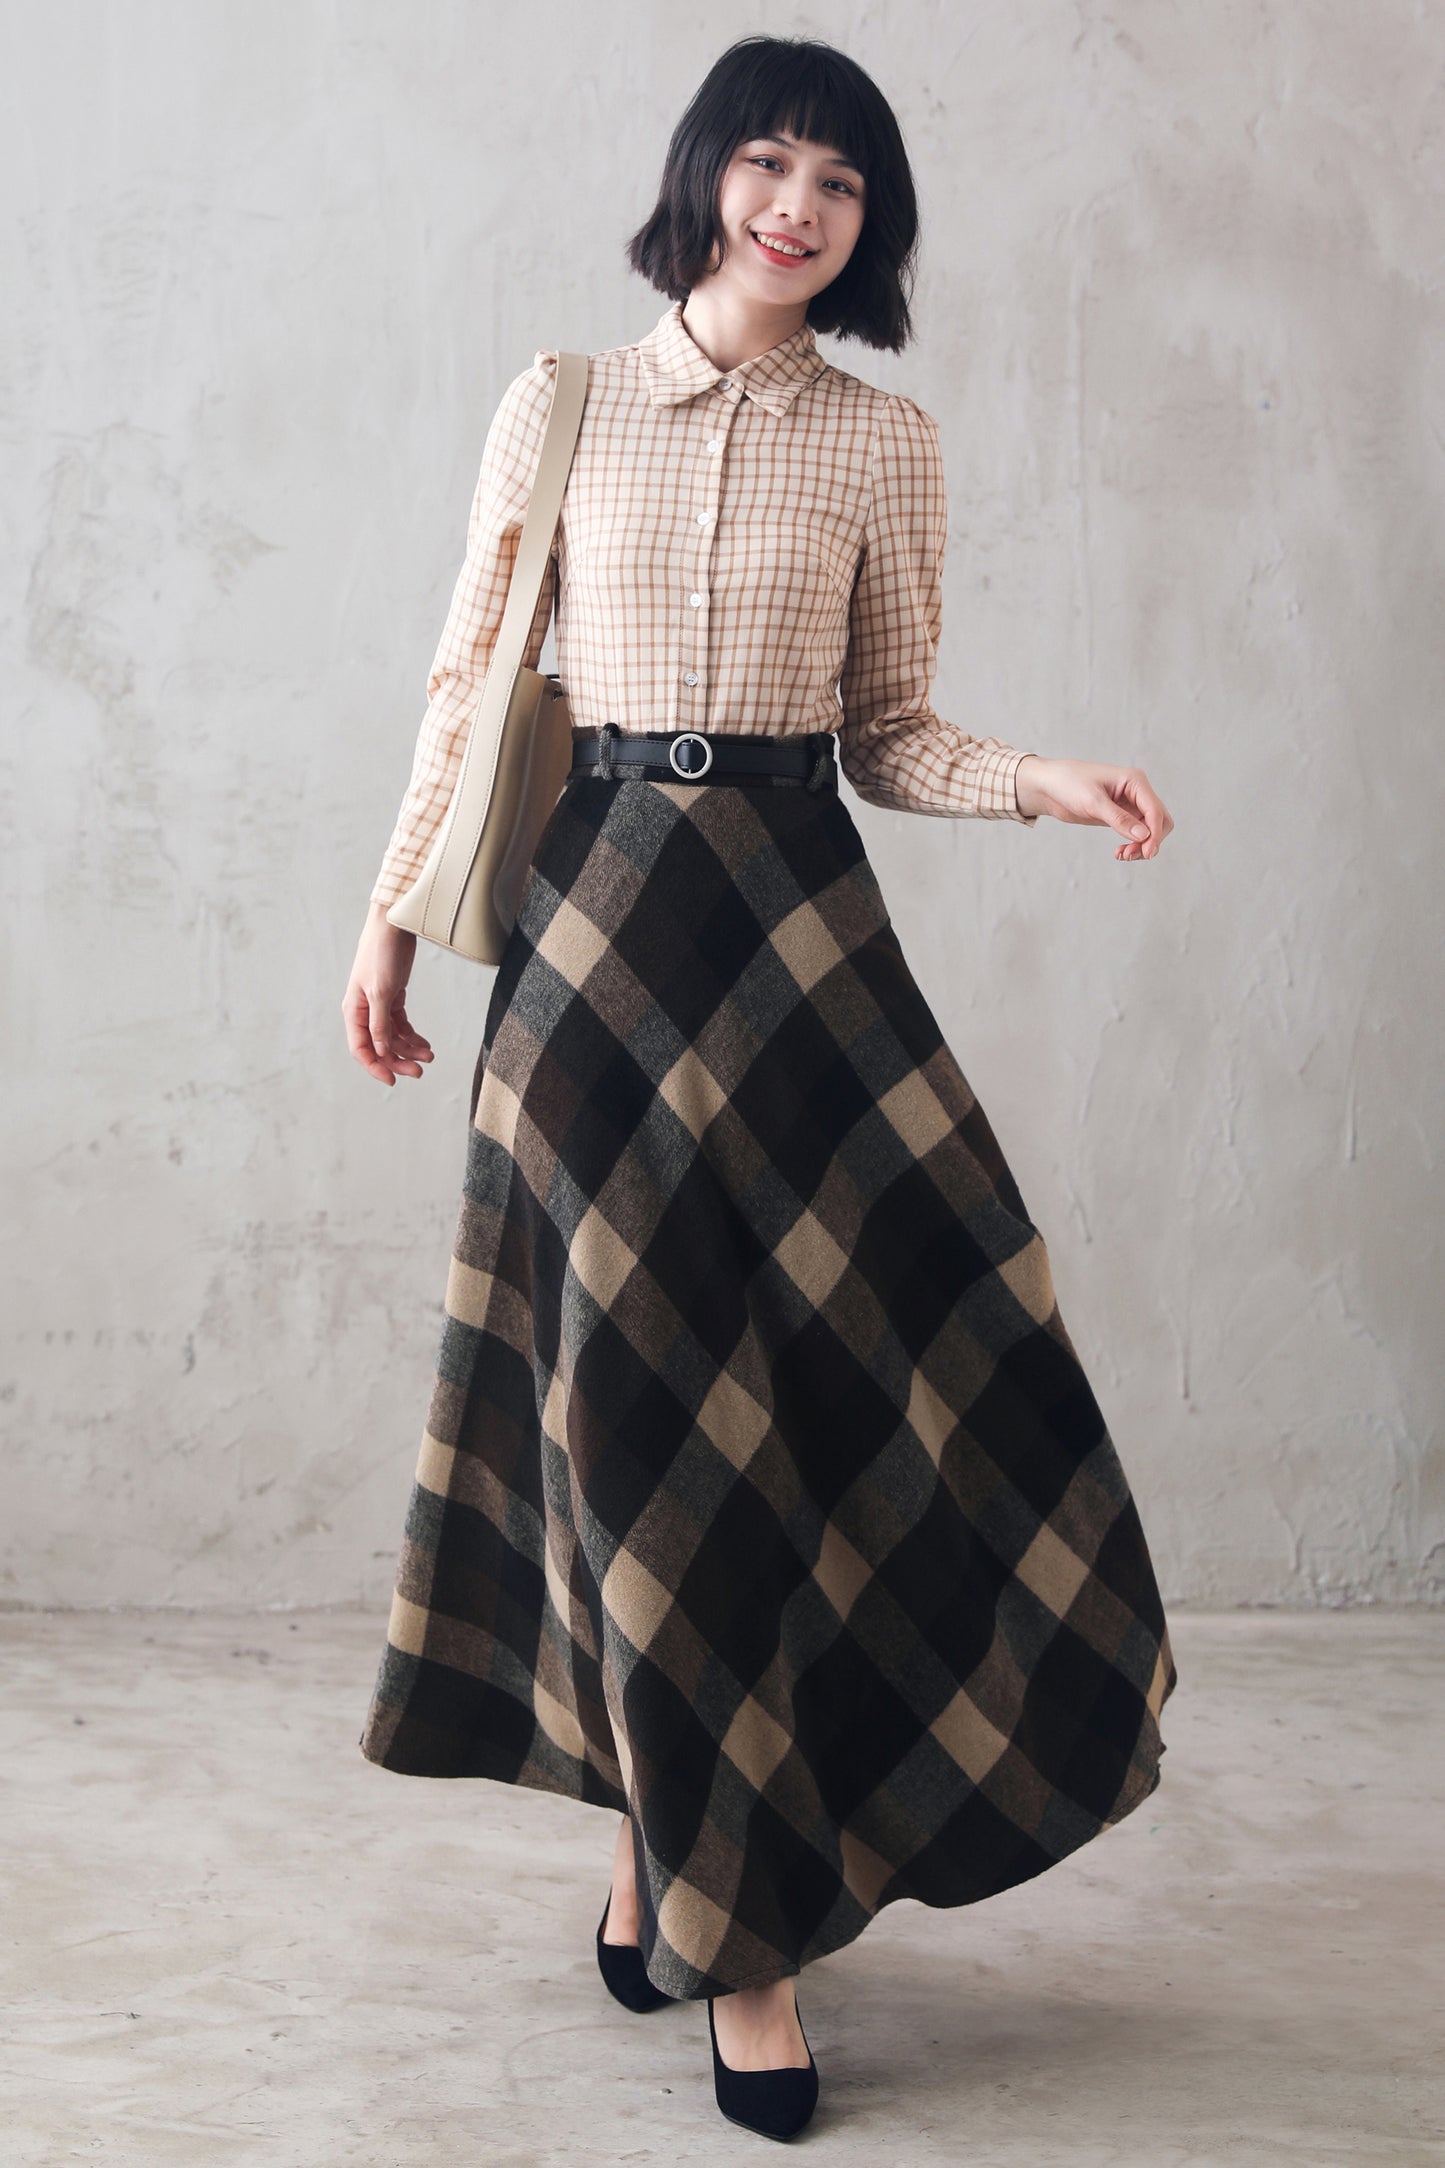 Women's Long Tartan Plaid Wool Maxi Skirt 3108